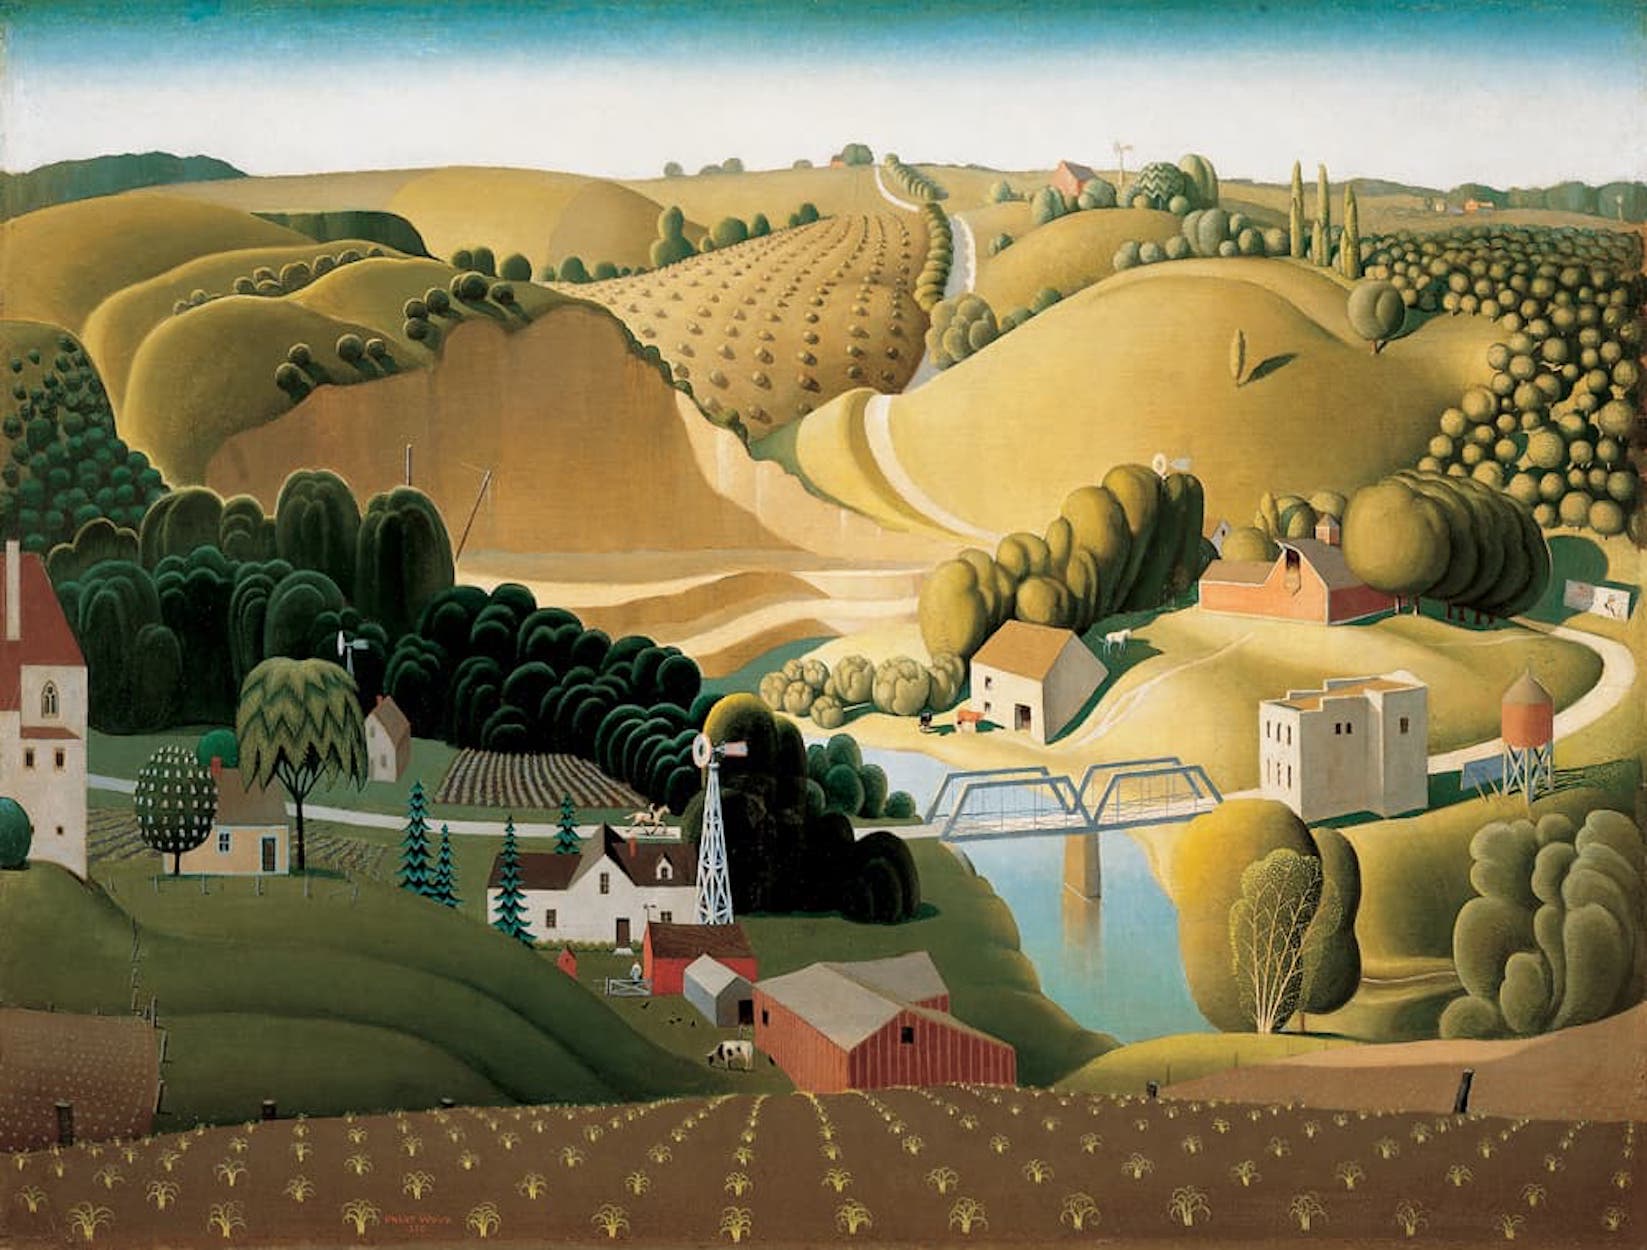 アイオワのストーン・シティ by Grant Wood - 1930年 - 76.84 x 101.6 cm 